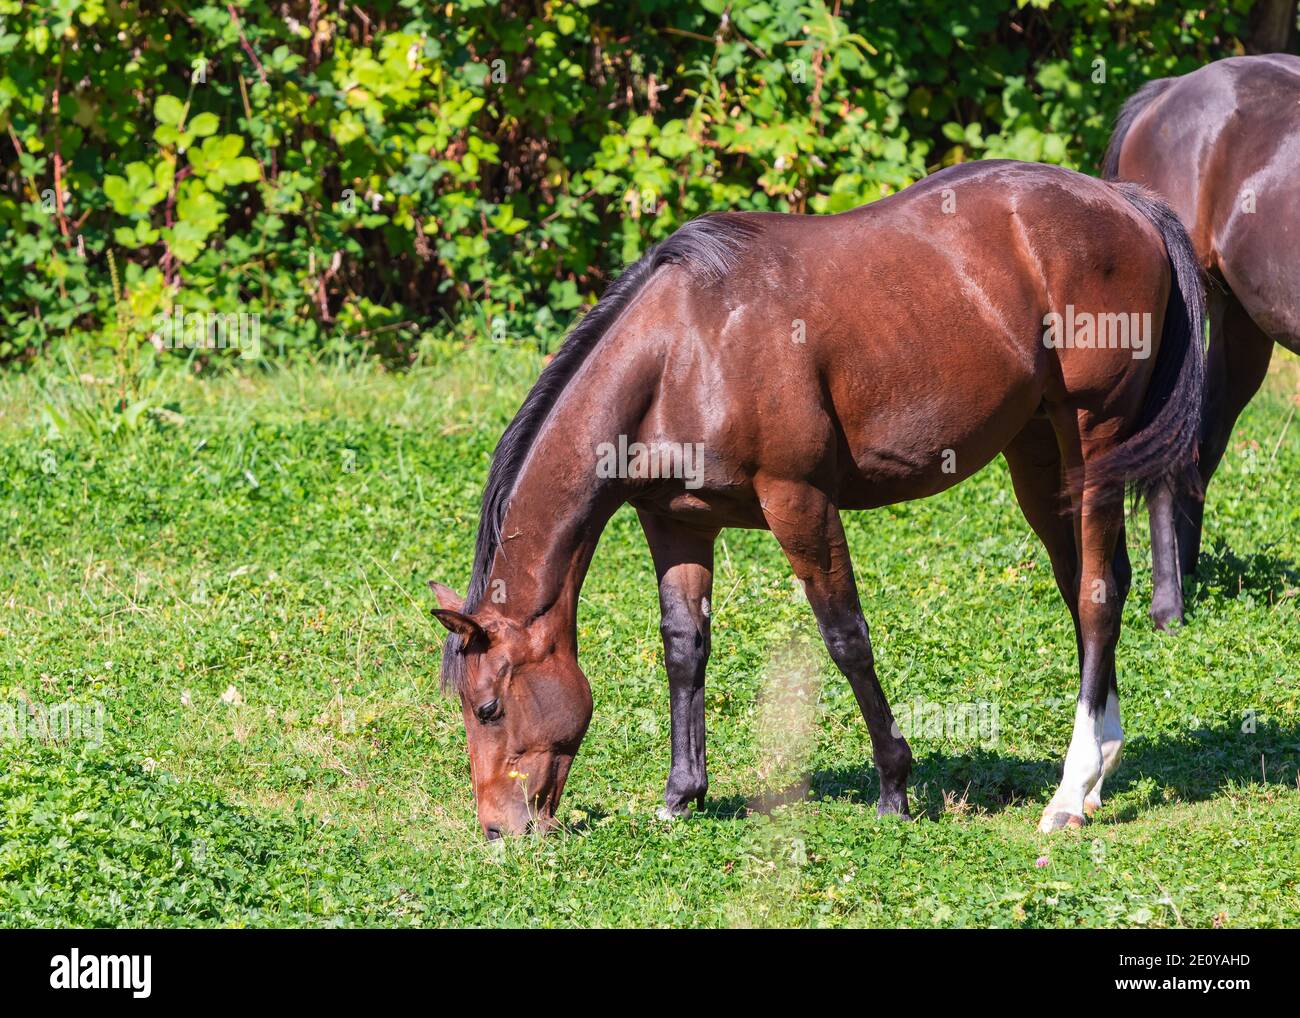 Marrón hermoso caballo pastando en el pasto. Enfoque selectivo, foto de viaje, vista de calle. Foto de stock